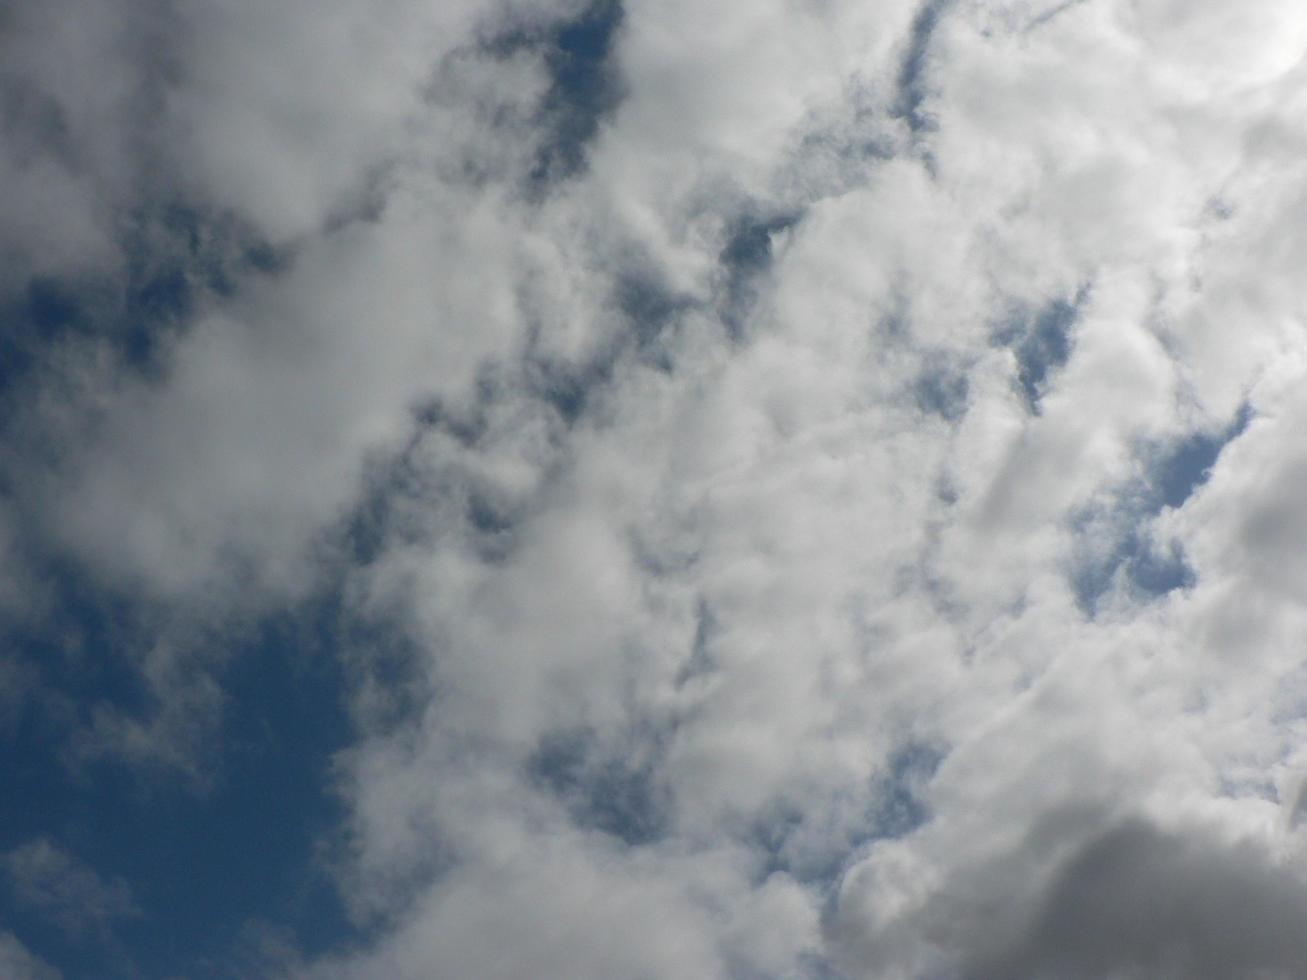 lindo céu azul com fundo de nuvens. nuvens do céu. ar e nuvens fofas no céu azul em um dia ensolarado, textura de fundo. copie o espaço. o conceito de esperança. foto